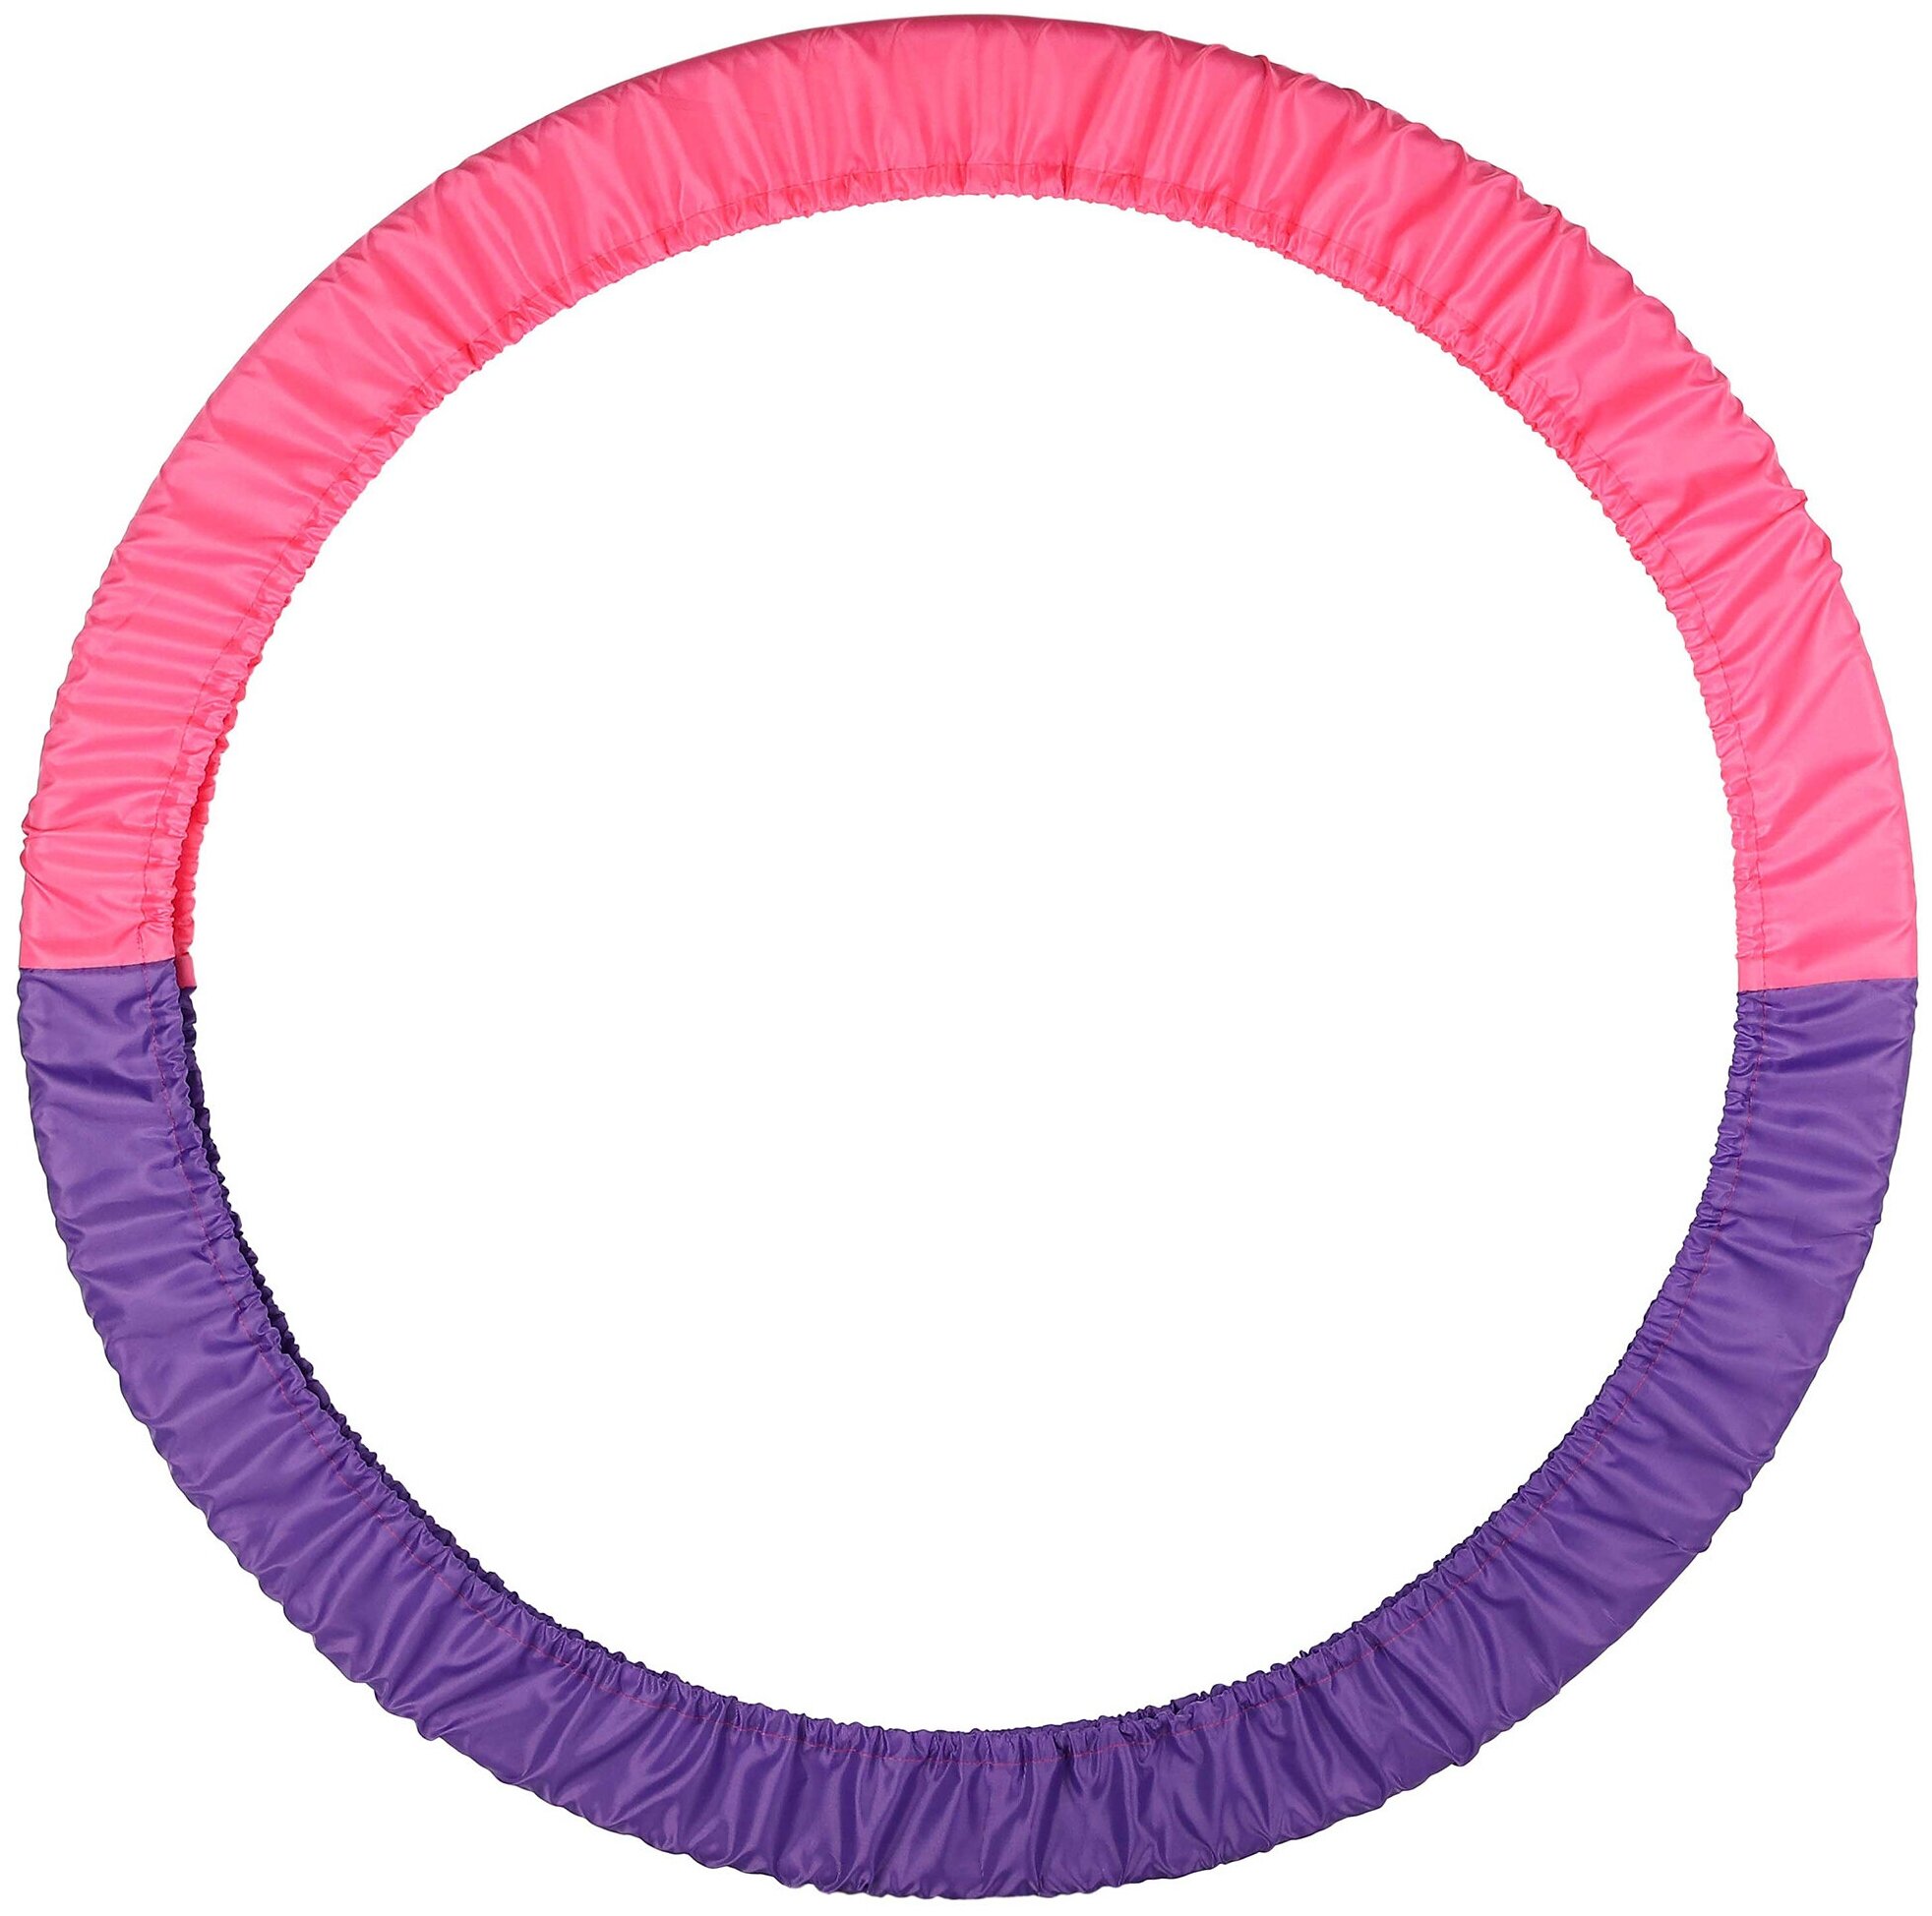 Чехол для обруча универсальный 60-90 см, фиолетово-розовый